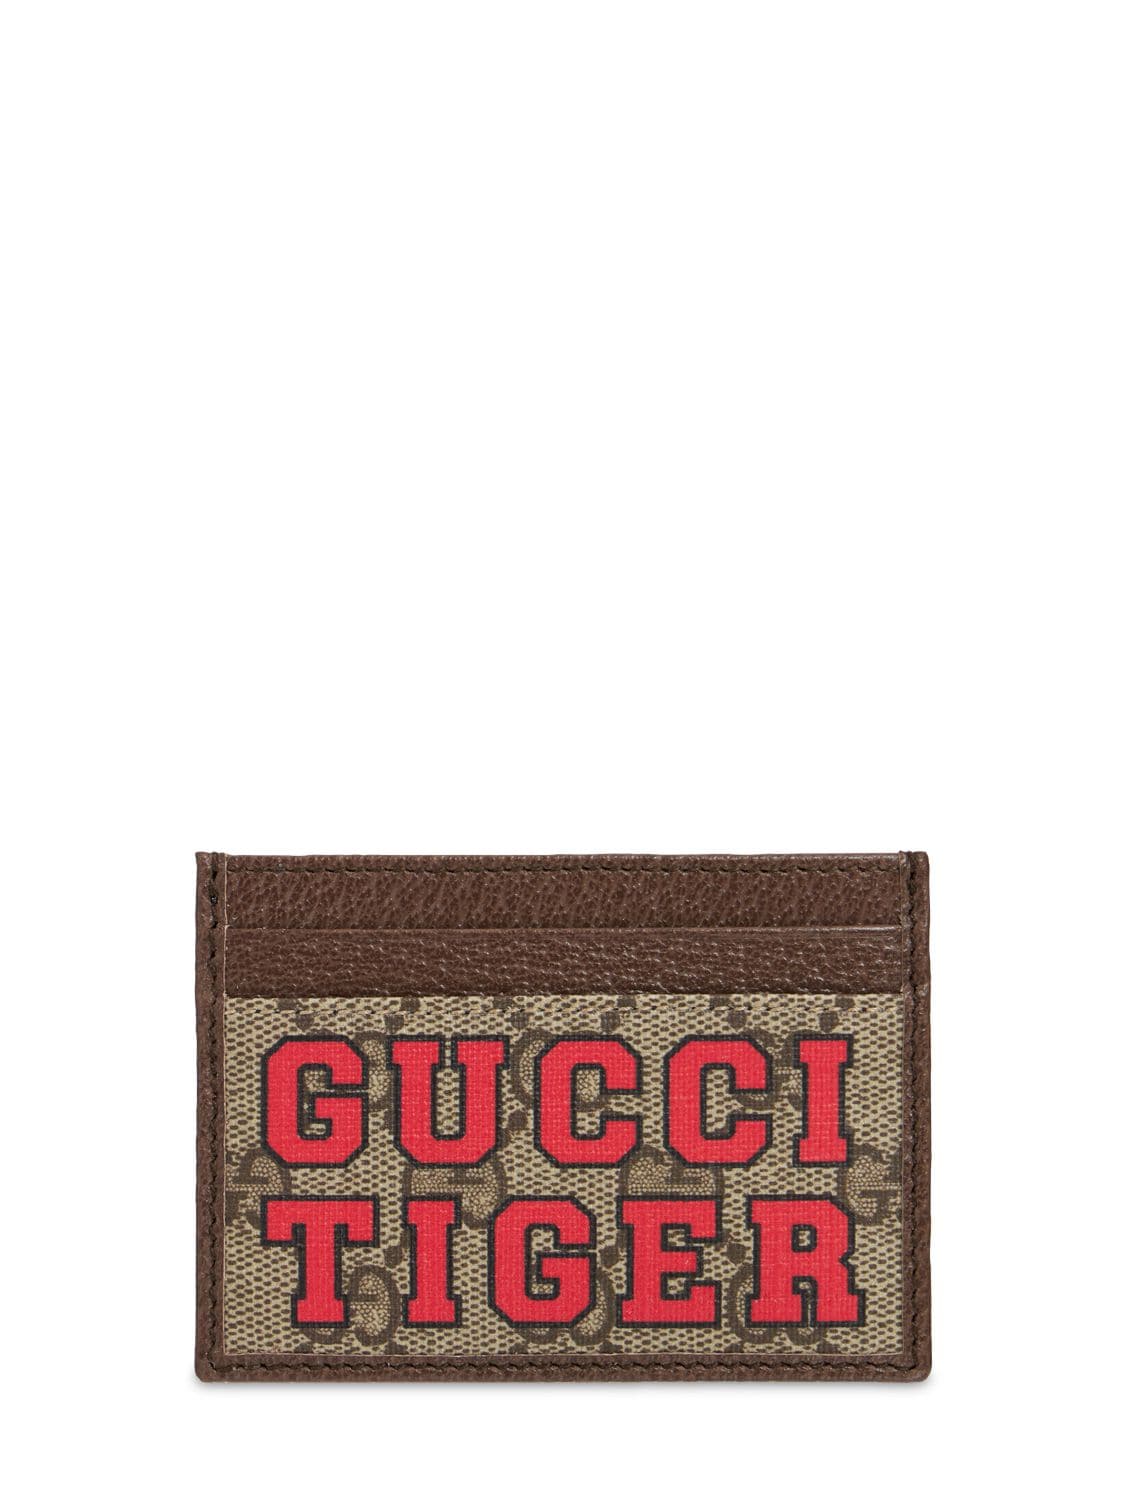 Porte-cartes En Toile Gg Gucci Tiger